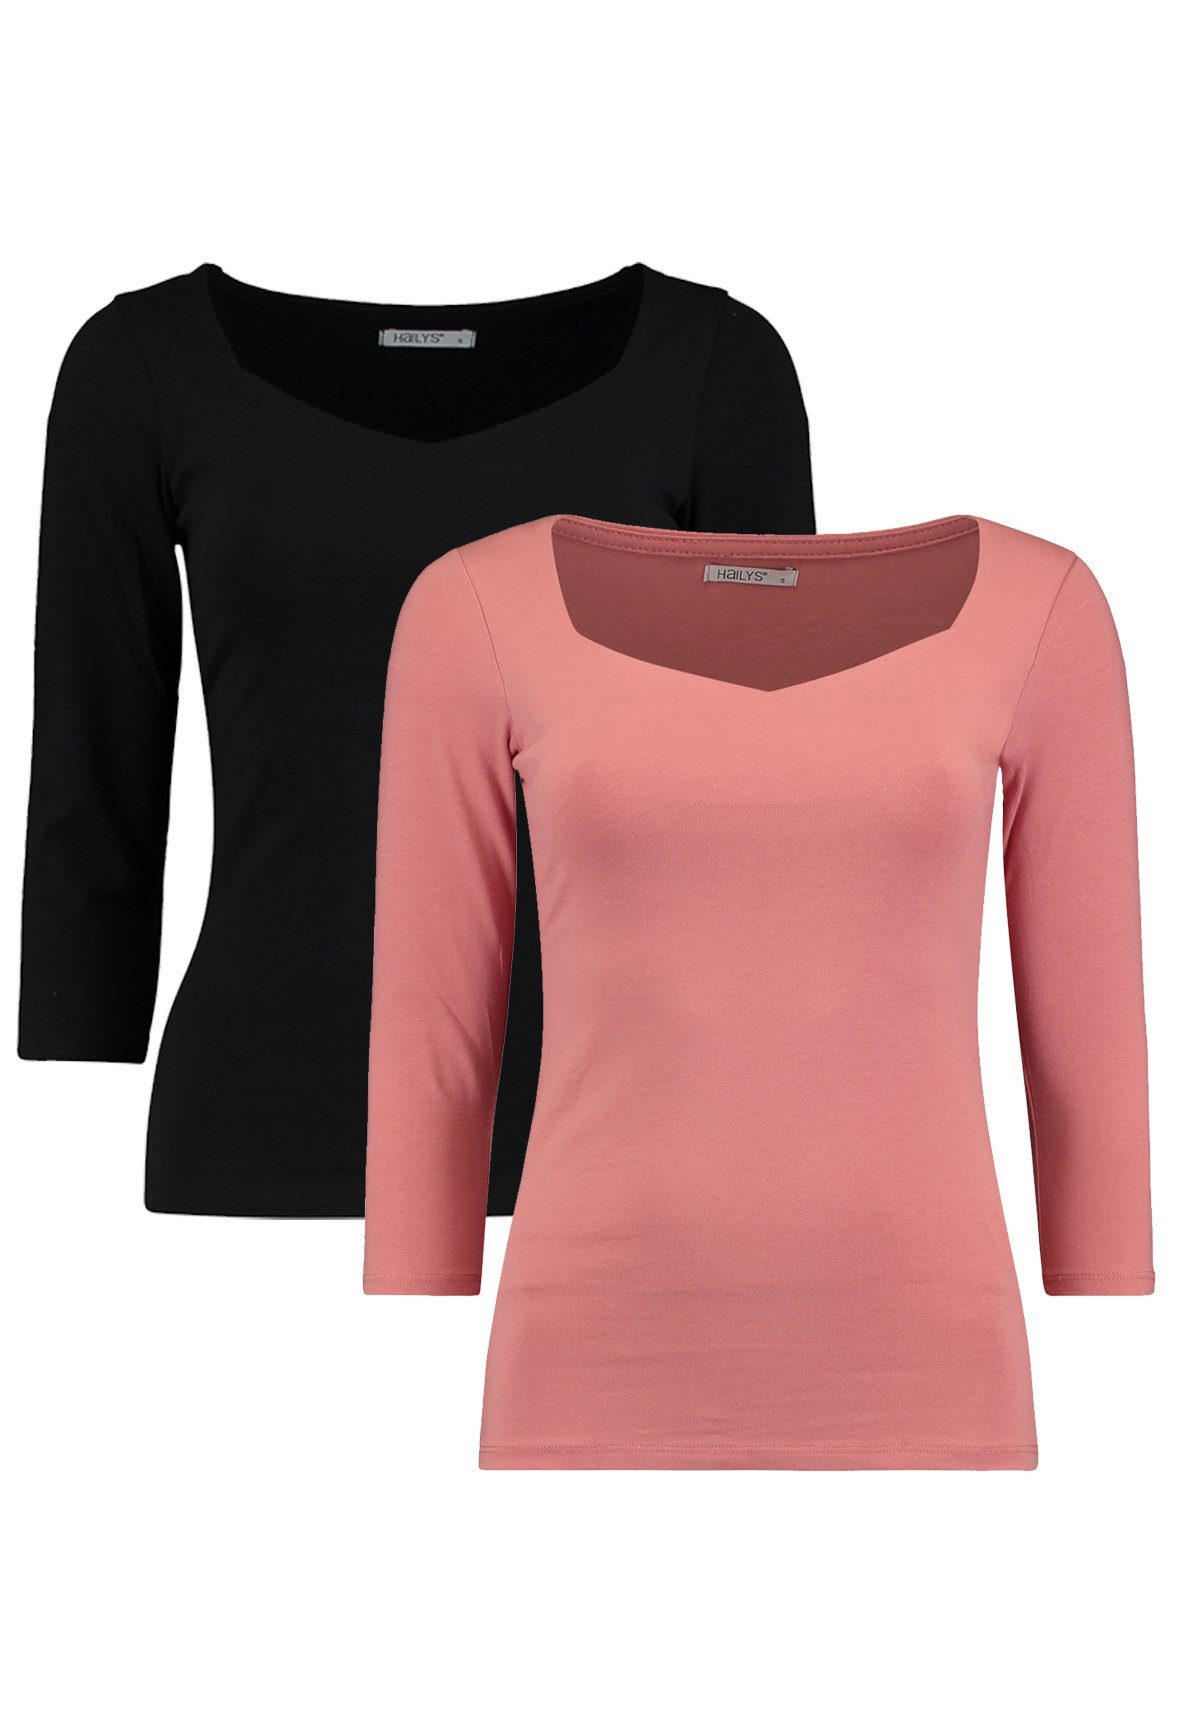 HaILY’S T-Shirt Dünnes 3/4 Arm Shirt 2-er Stück Set Stretch Longsleeve NOA (2-tlg) 4691 in Schwarz-Pink